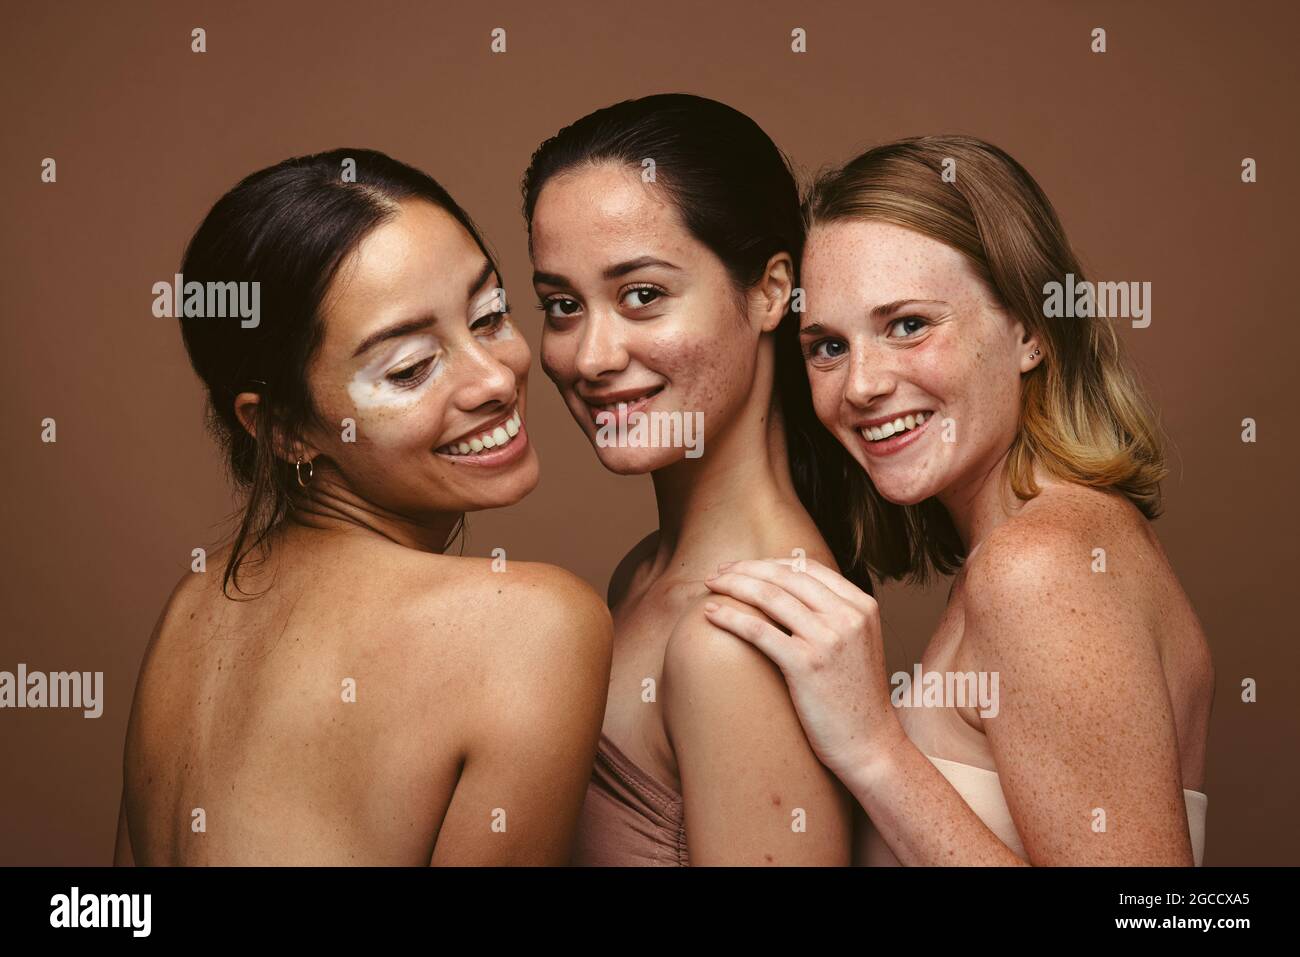 Primo piano di tre donne che hanno problemi di pelle in piedi insieme su sfondo marrone. Giovani donne sicure con imperfezioni della pelle che riflettono i posi del corpo Foto Stock